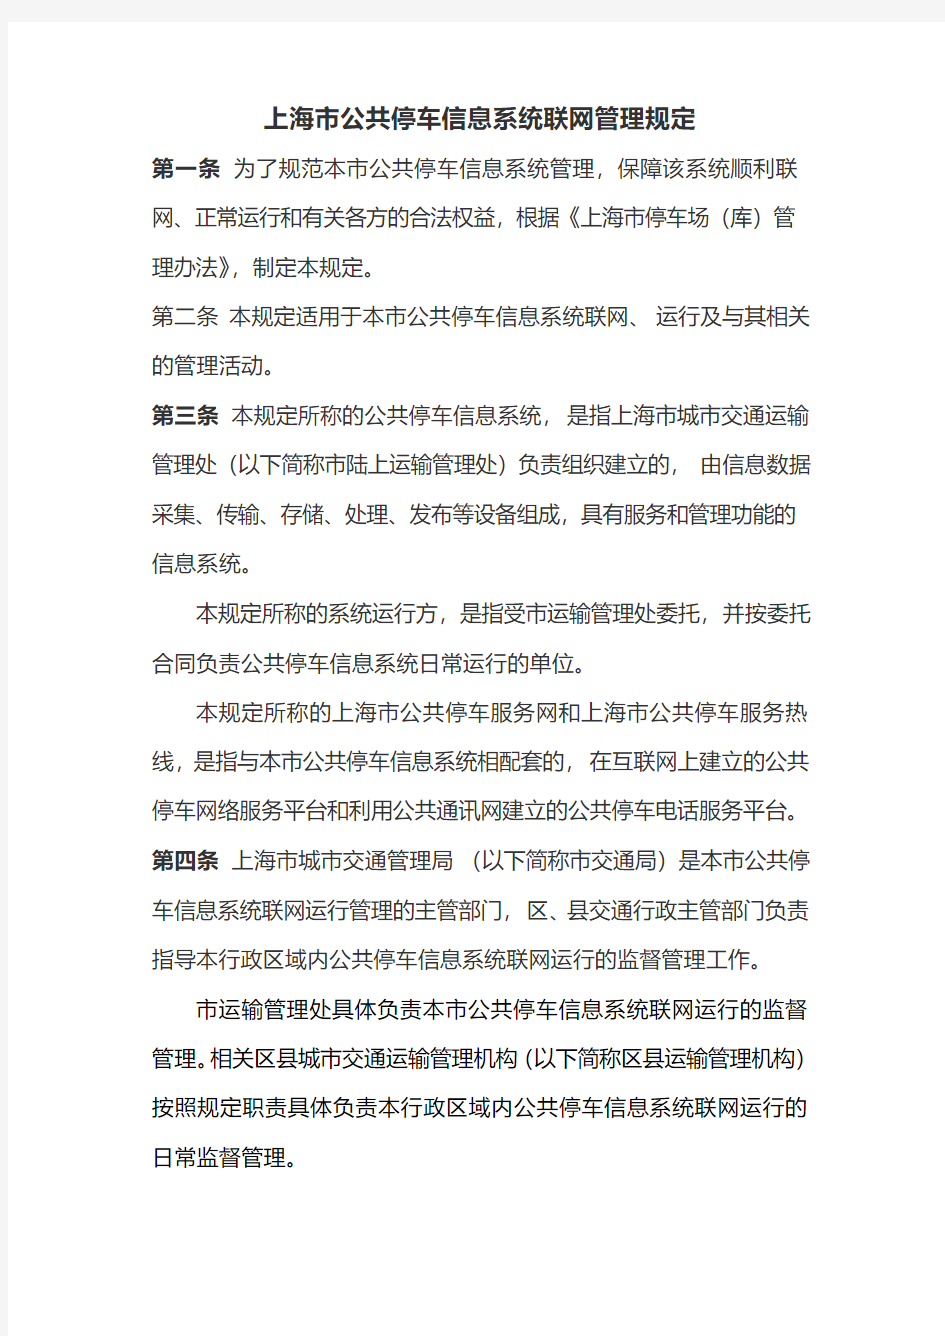 上海市公共停车信息系统联网管理规定